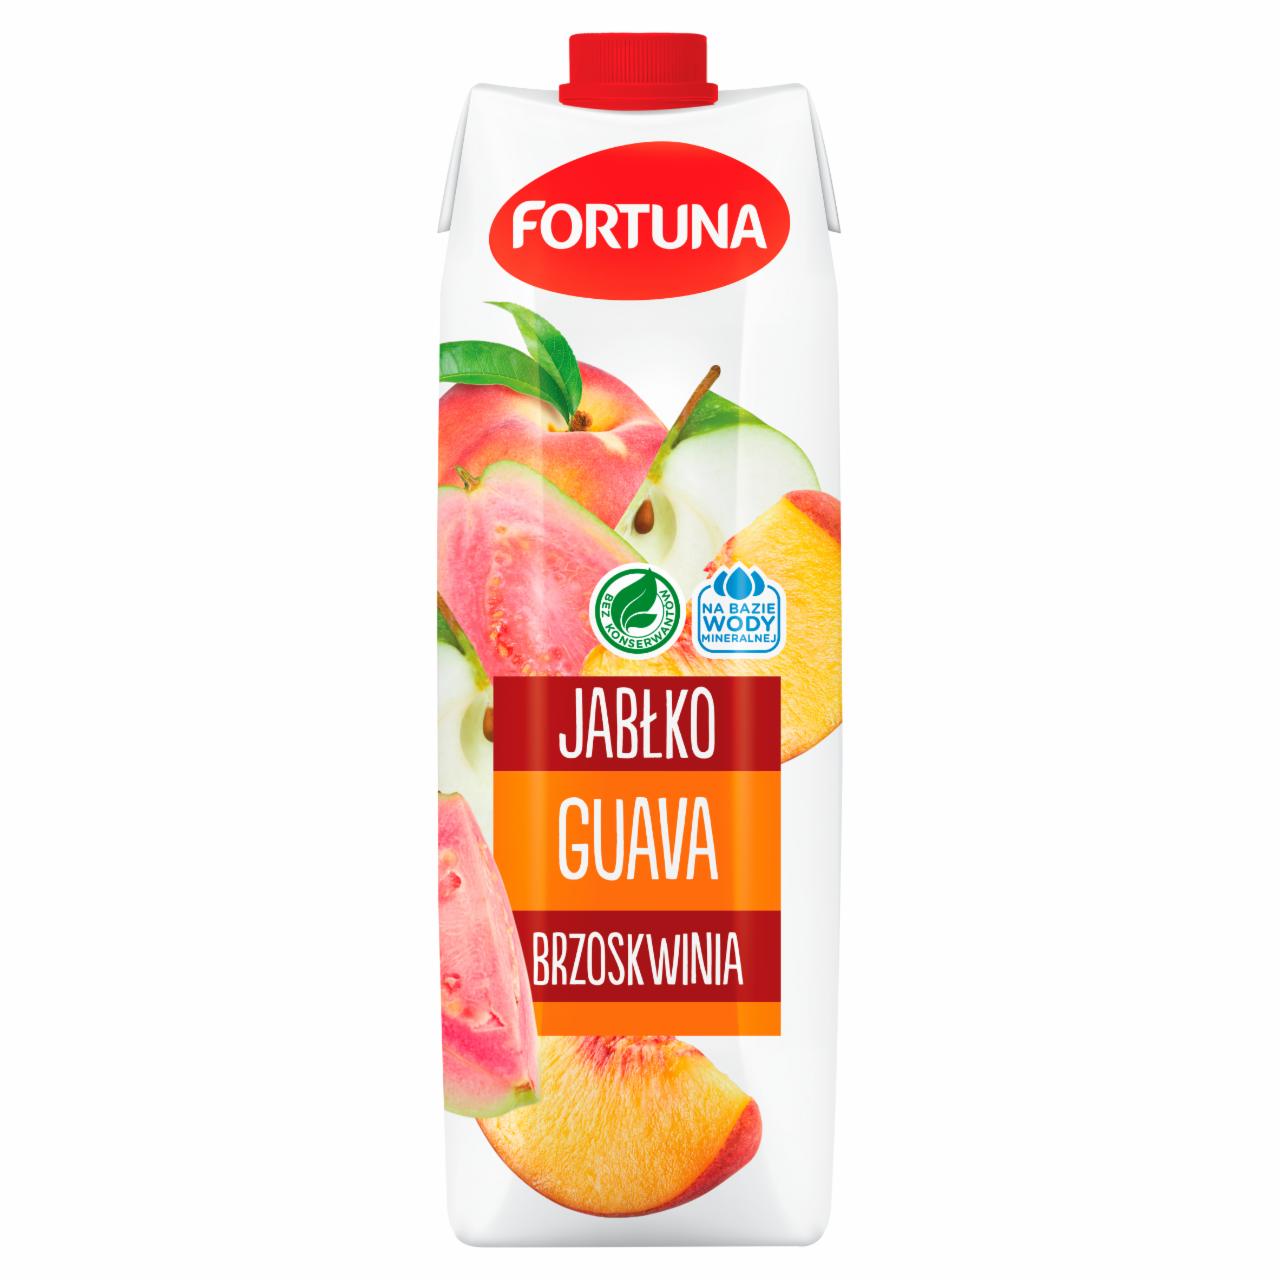 Zdjęcia - Fortuna Napój jabłko guava brzoskwinia 1 l